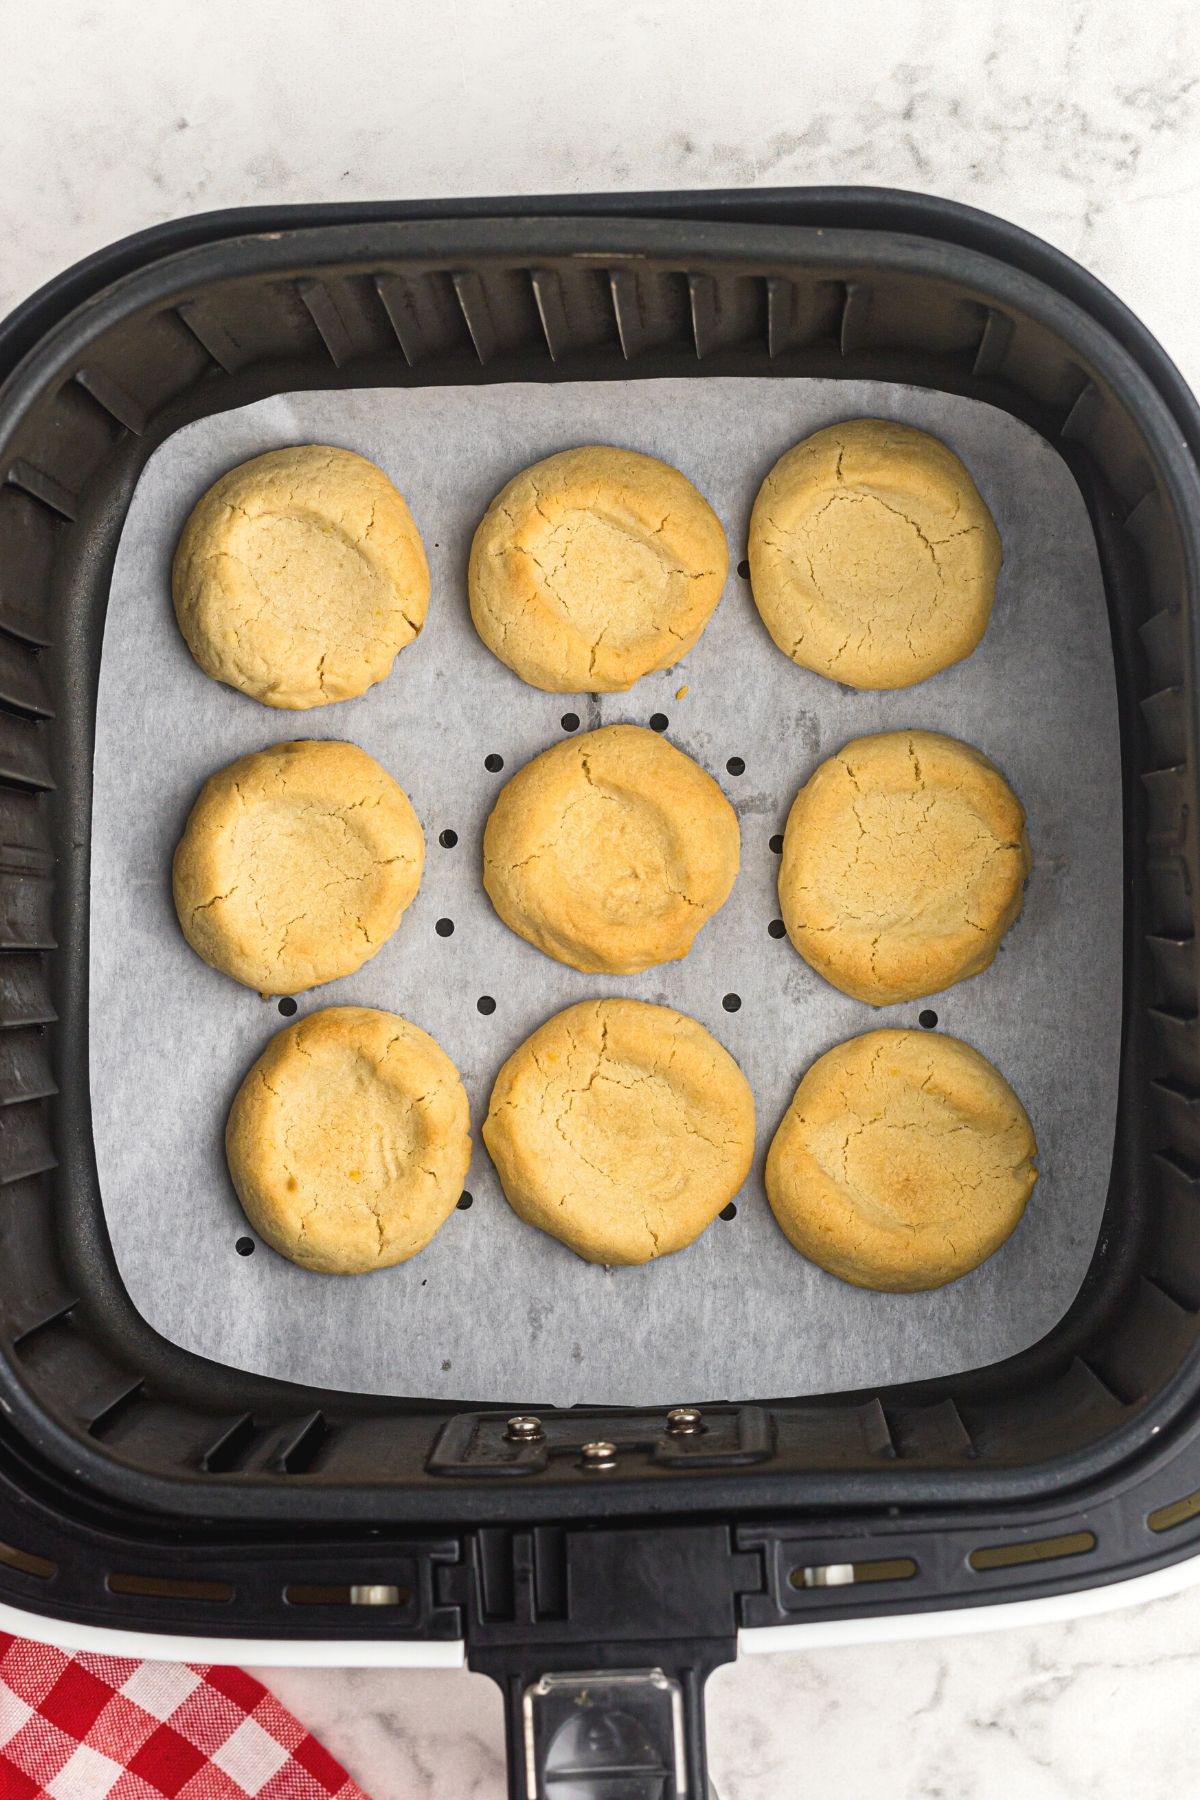 Golden cookies in the air fryer basket